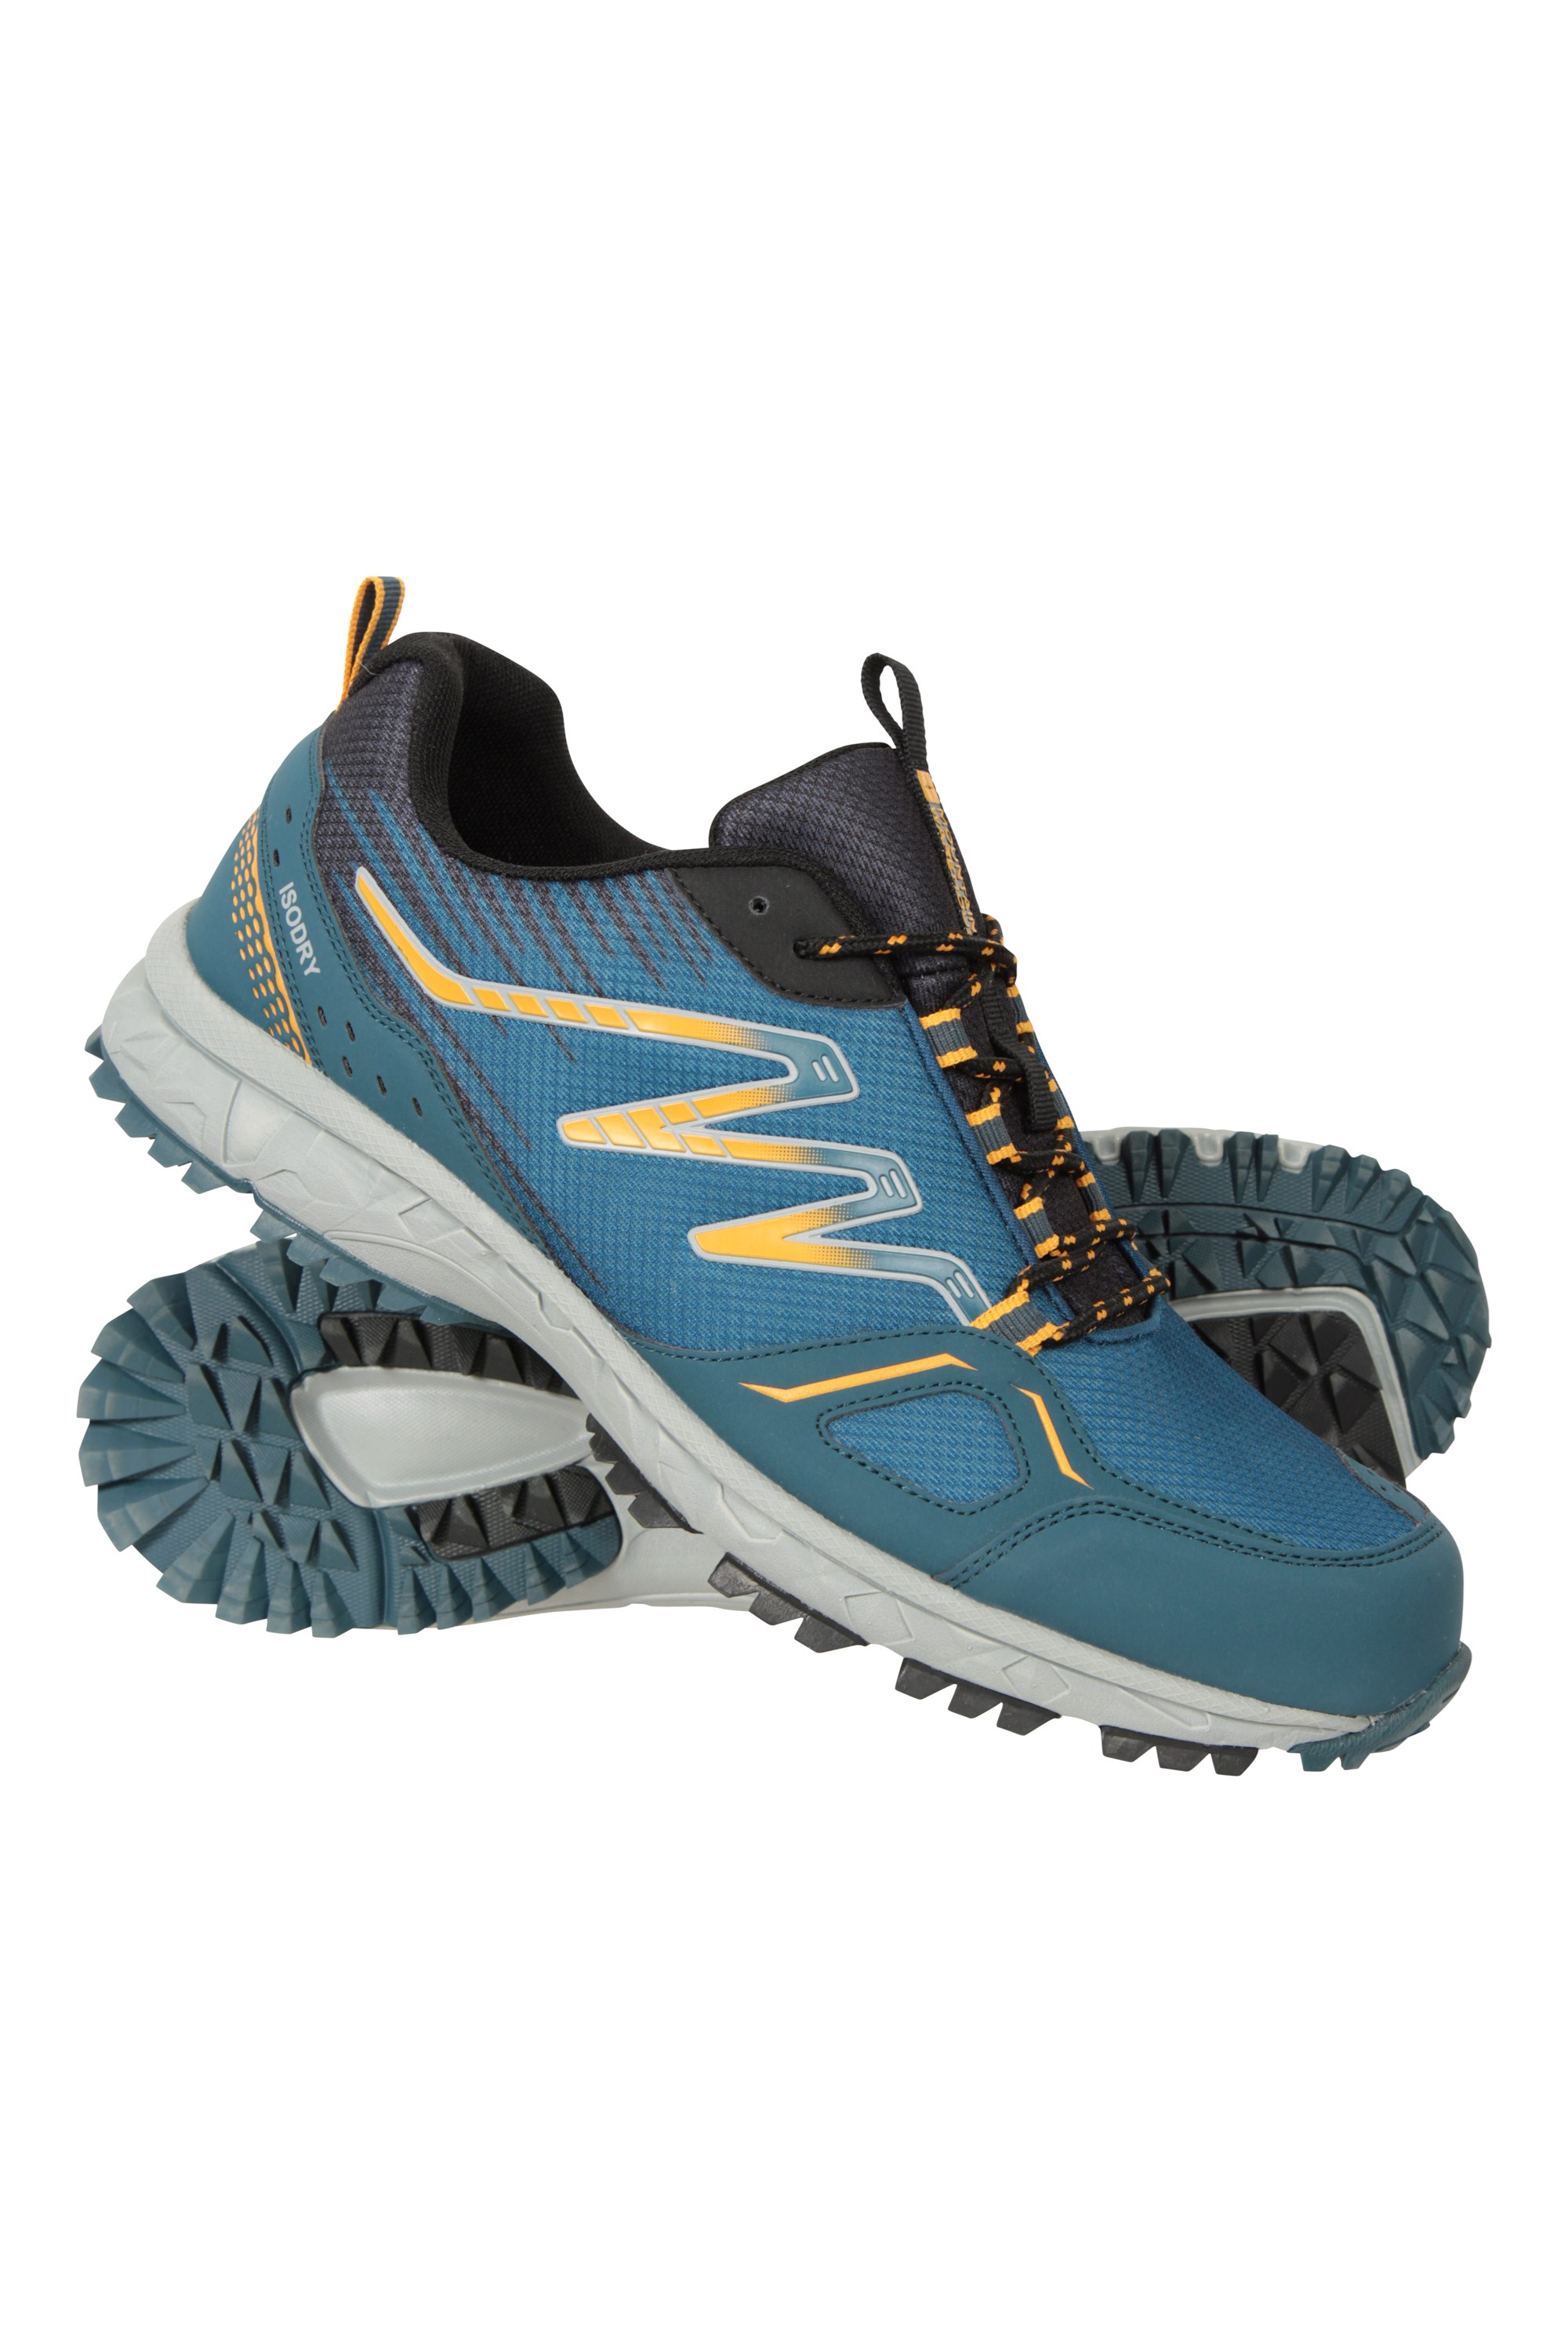 Enhance Mens Waterproof Trail Runner Sneakers - Yellow